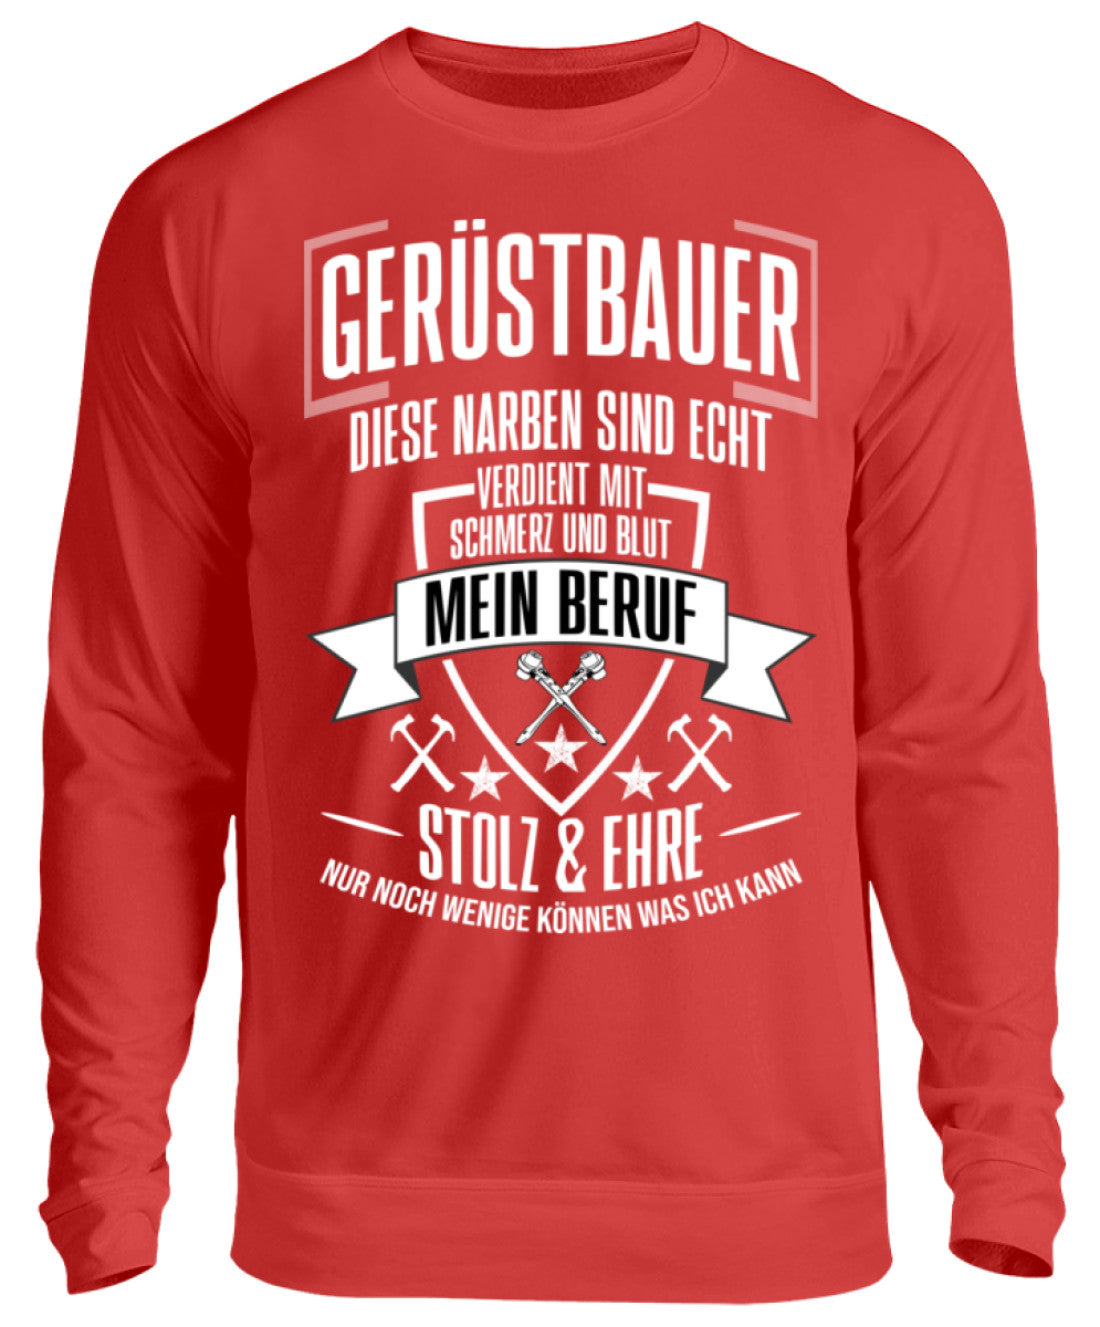 Gerüstbauer / MEIN BERUF  - Unisex Pullover €32.95 Gerüstbauer - Shop >>